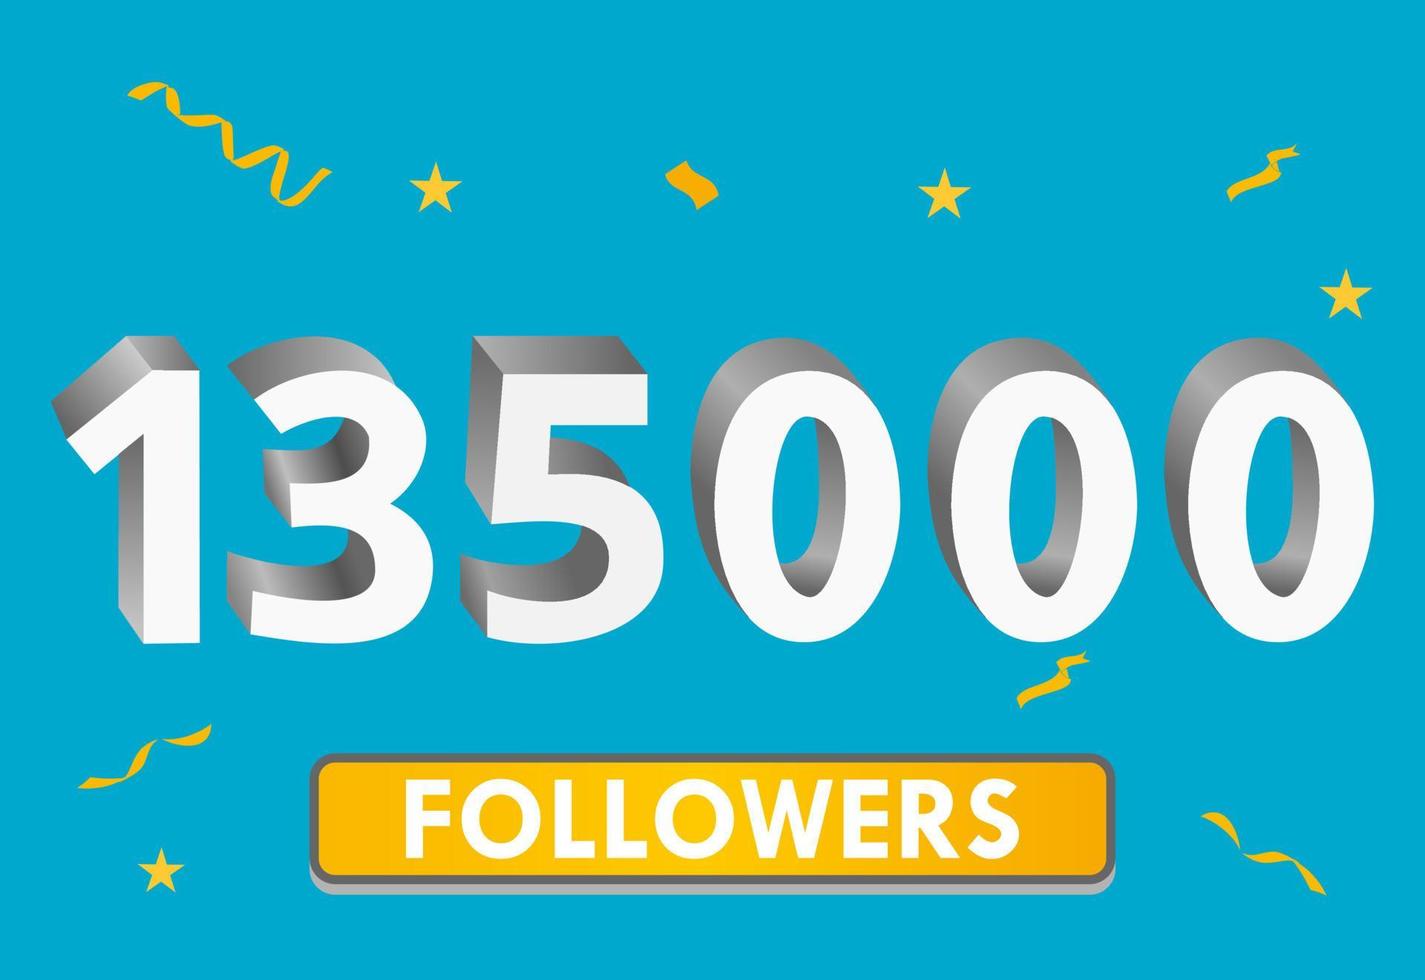 Illustration 3D-Zahlen für soziale Medien 135.000 Likes, danke, Feiern von Abonnenten-Fans. Banner mit 135000 Followern vektor